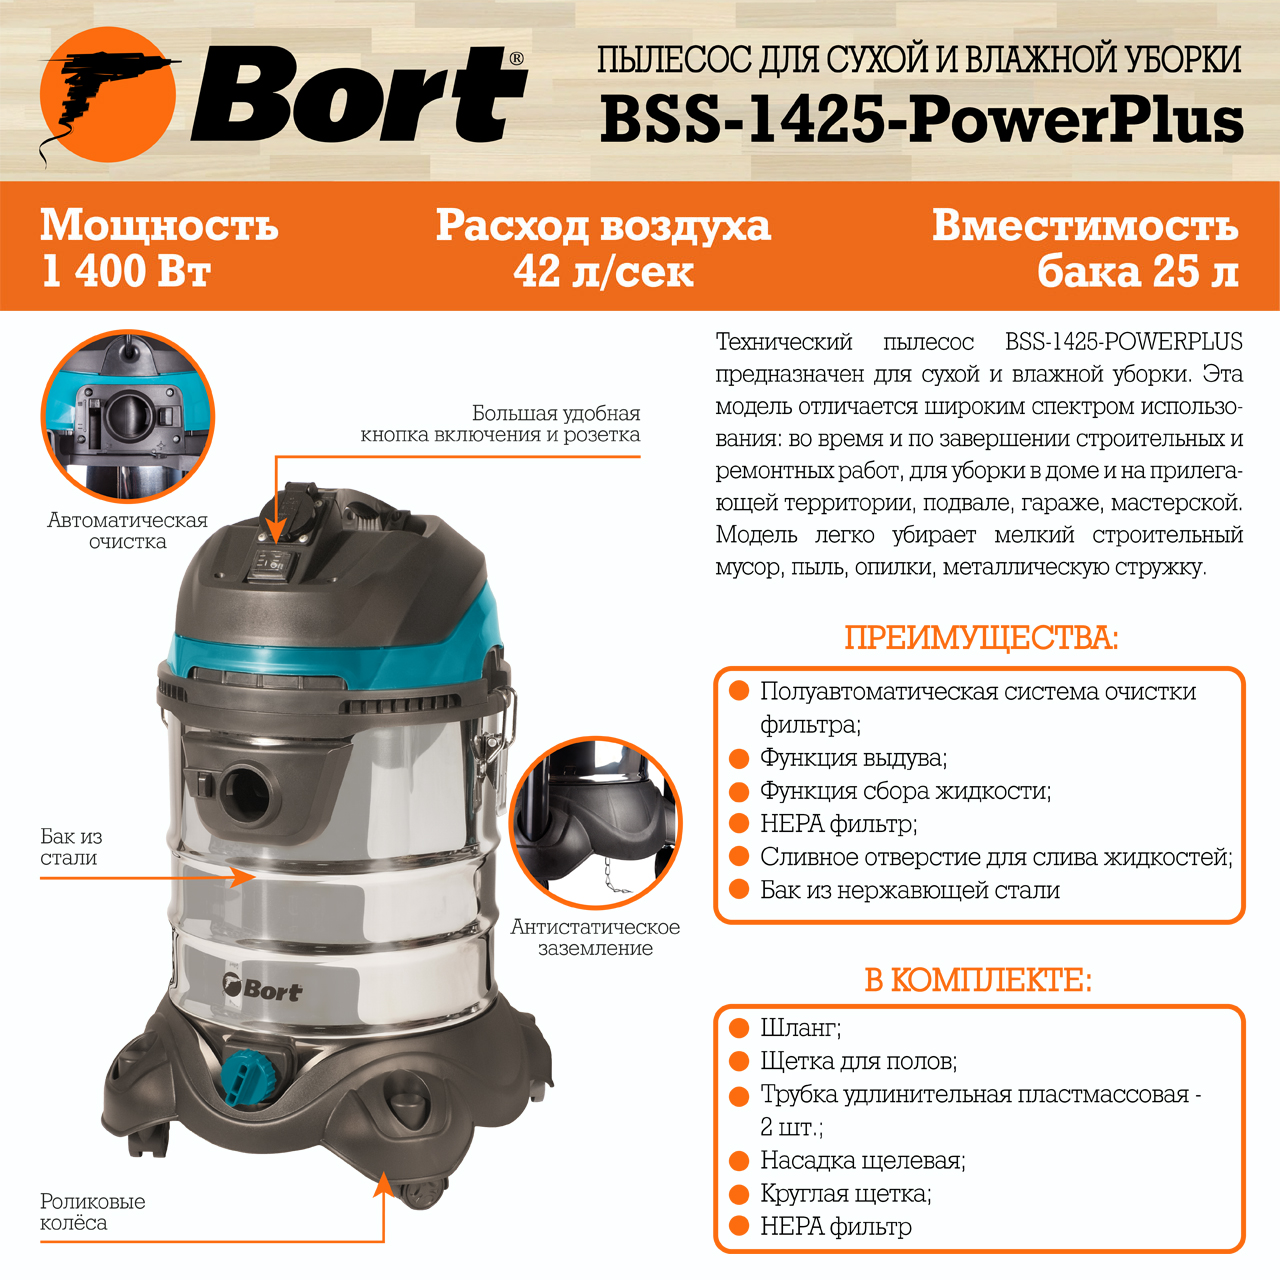 Пылесос для сухой и влажной уборки BORT BSS-1425-PowerPlus